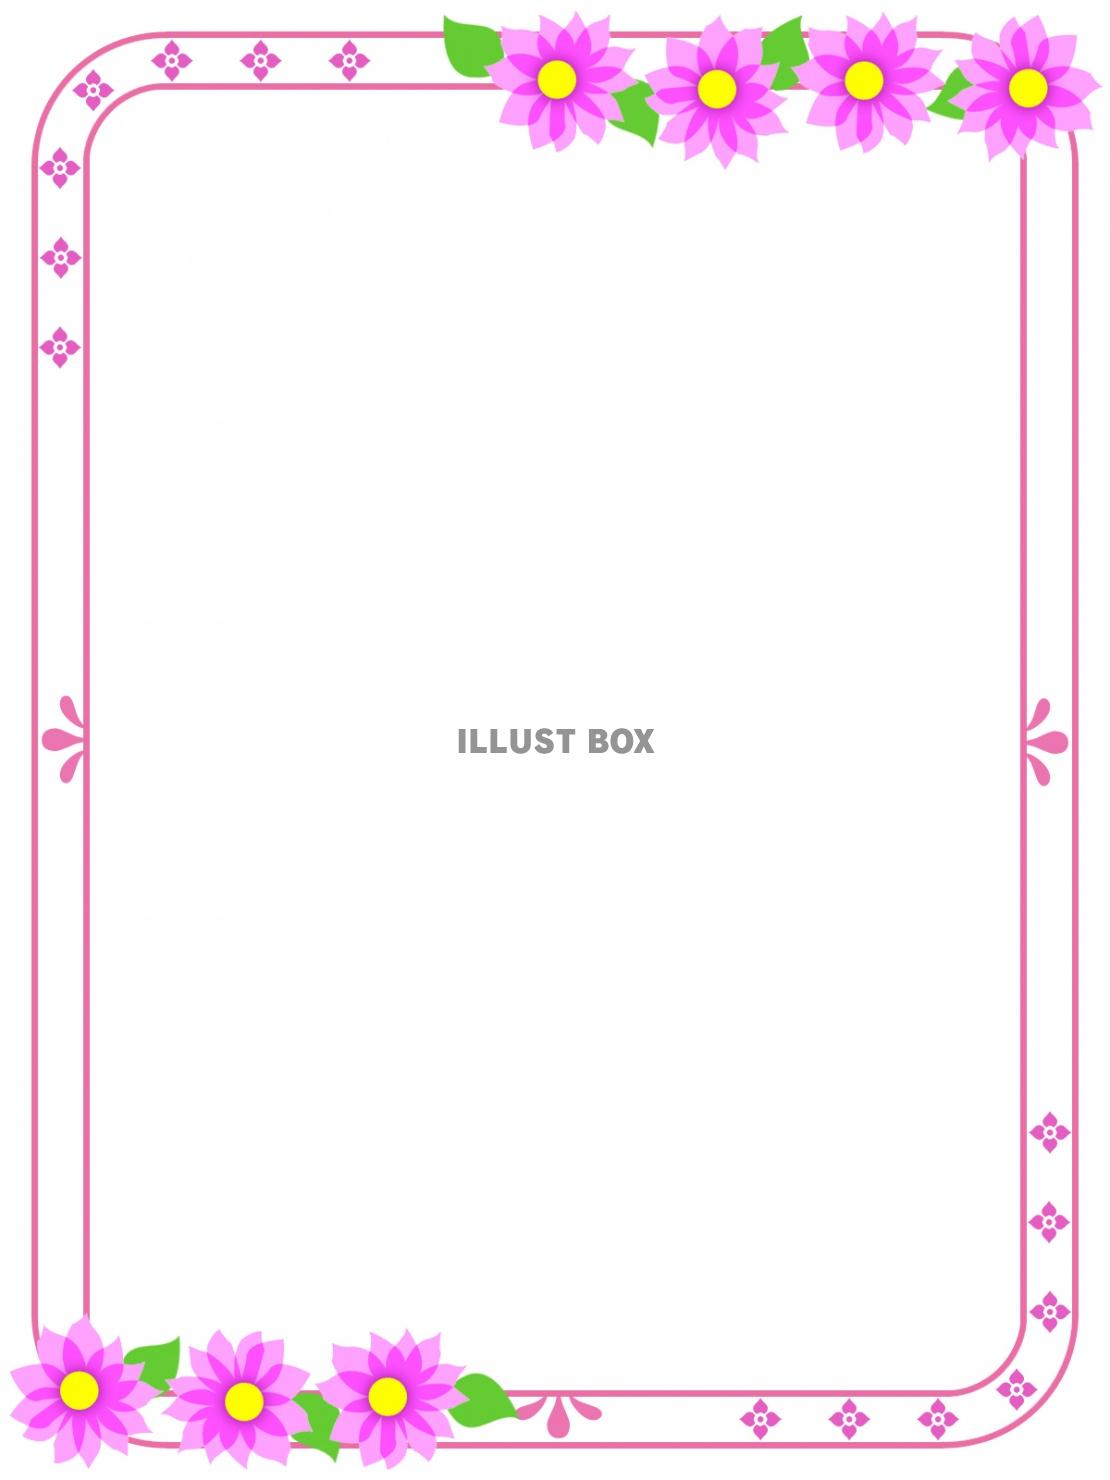 ピンク色お花模様フレームシンプル飾り枠素材イラスト